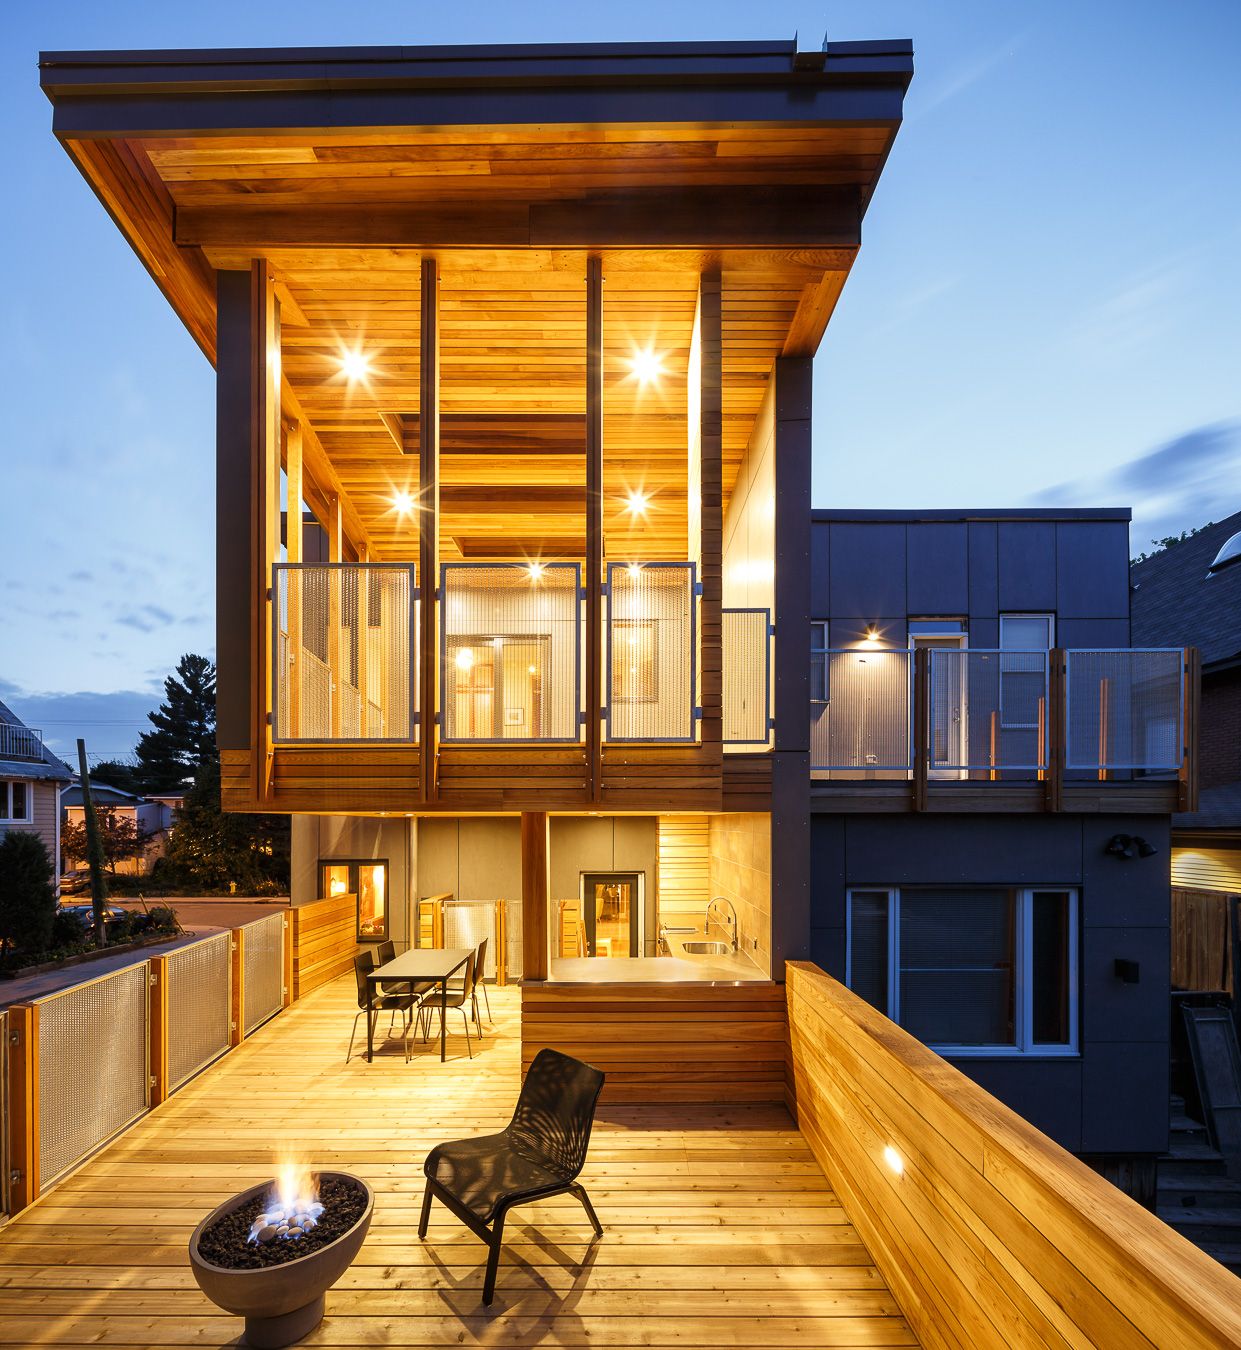 fir-roof-deck